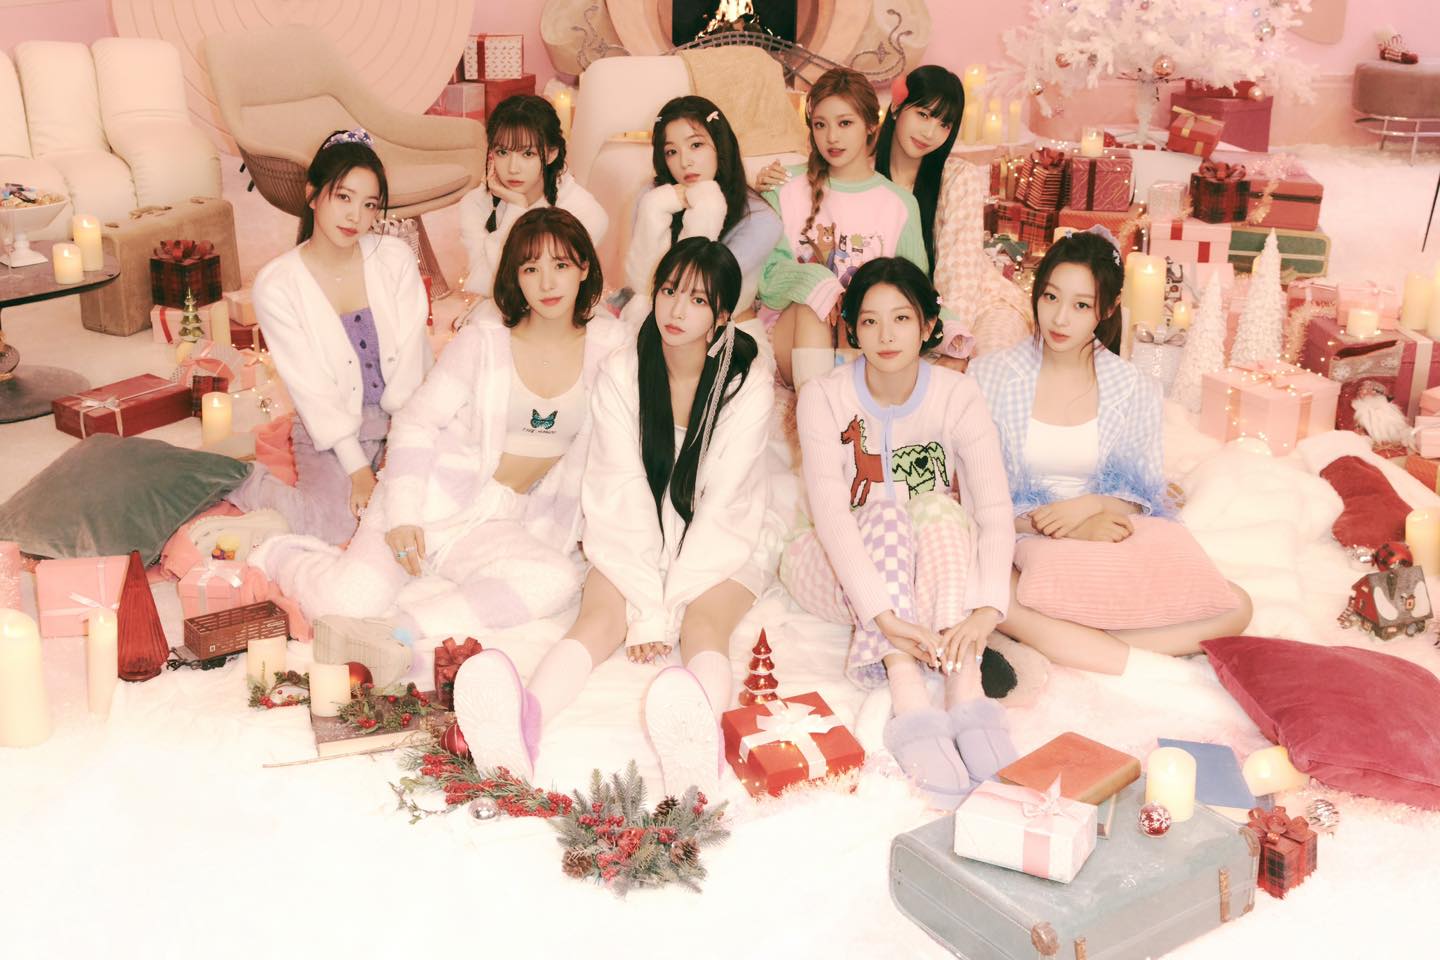 พาส่องเมคอัพ ลุคคริสต์มาส ของสาว ๆ Red Velvet & aespa